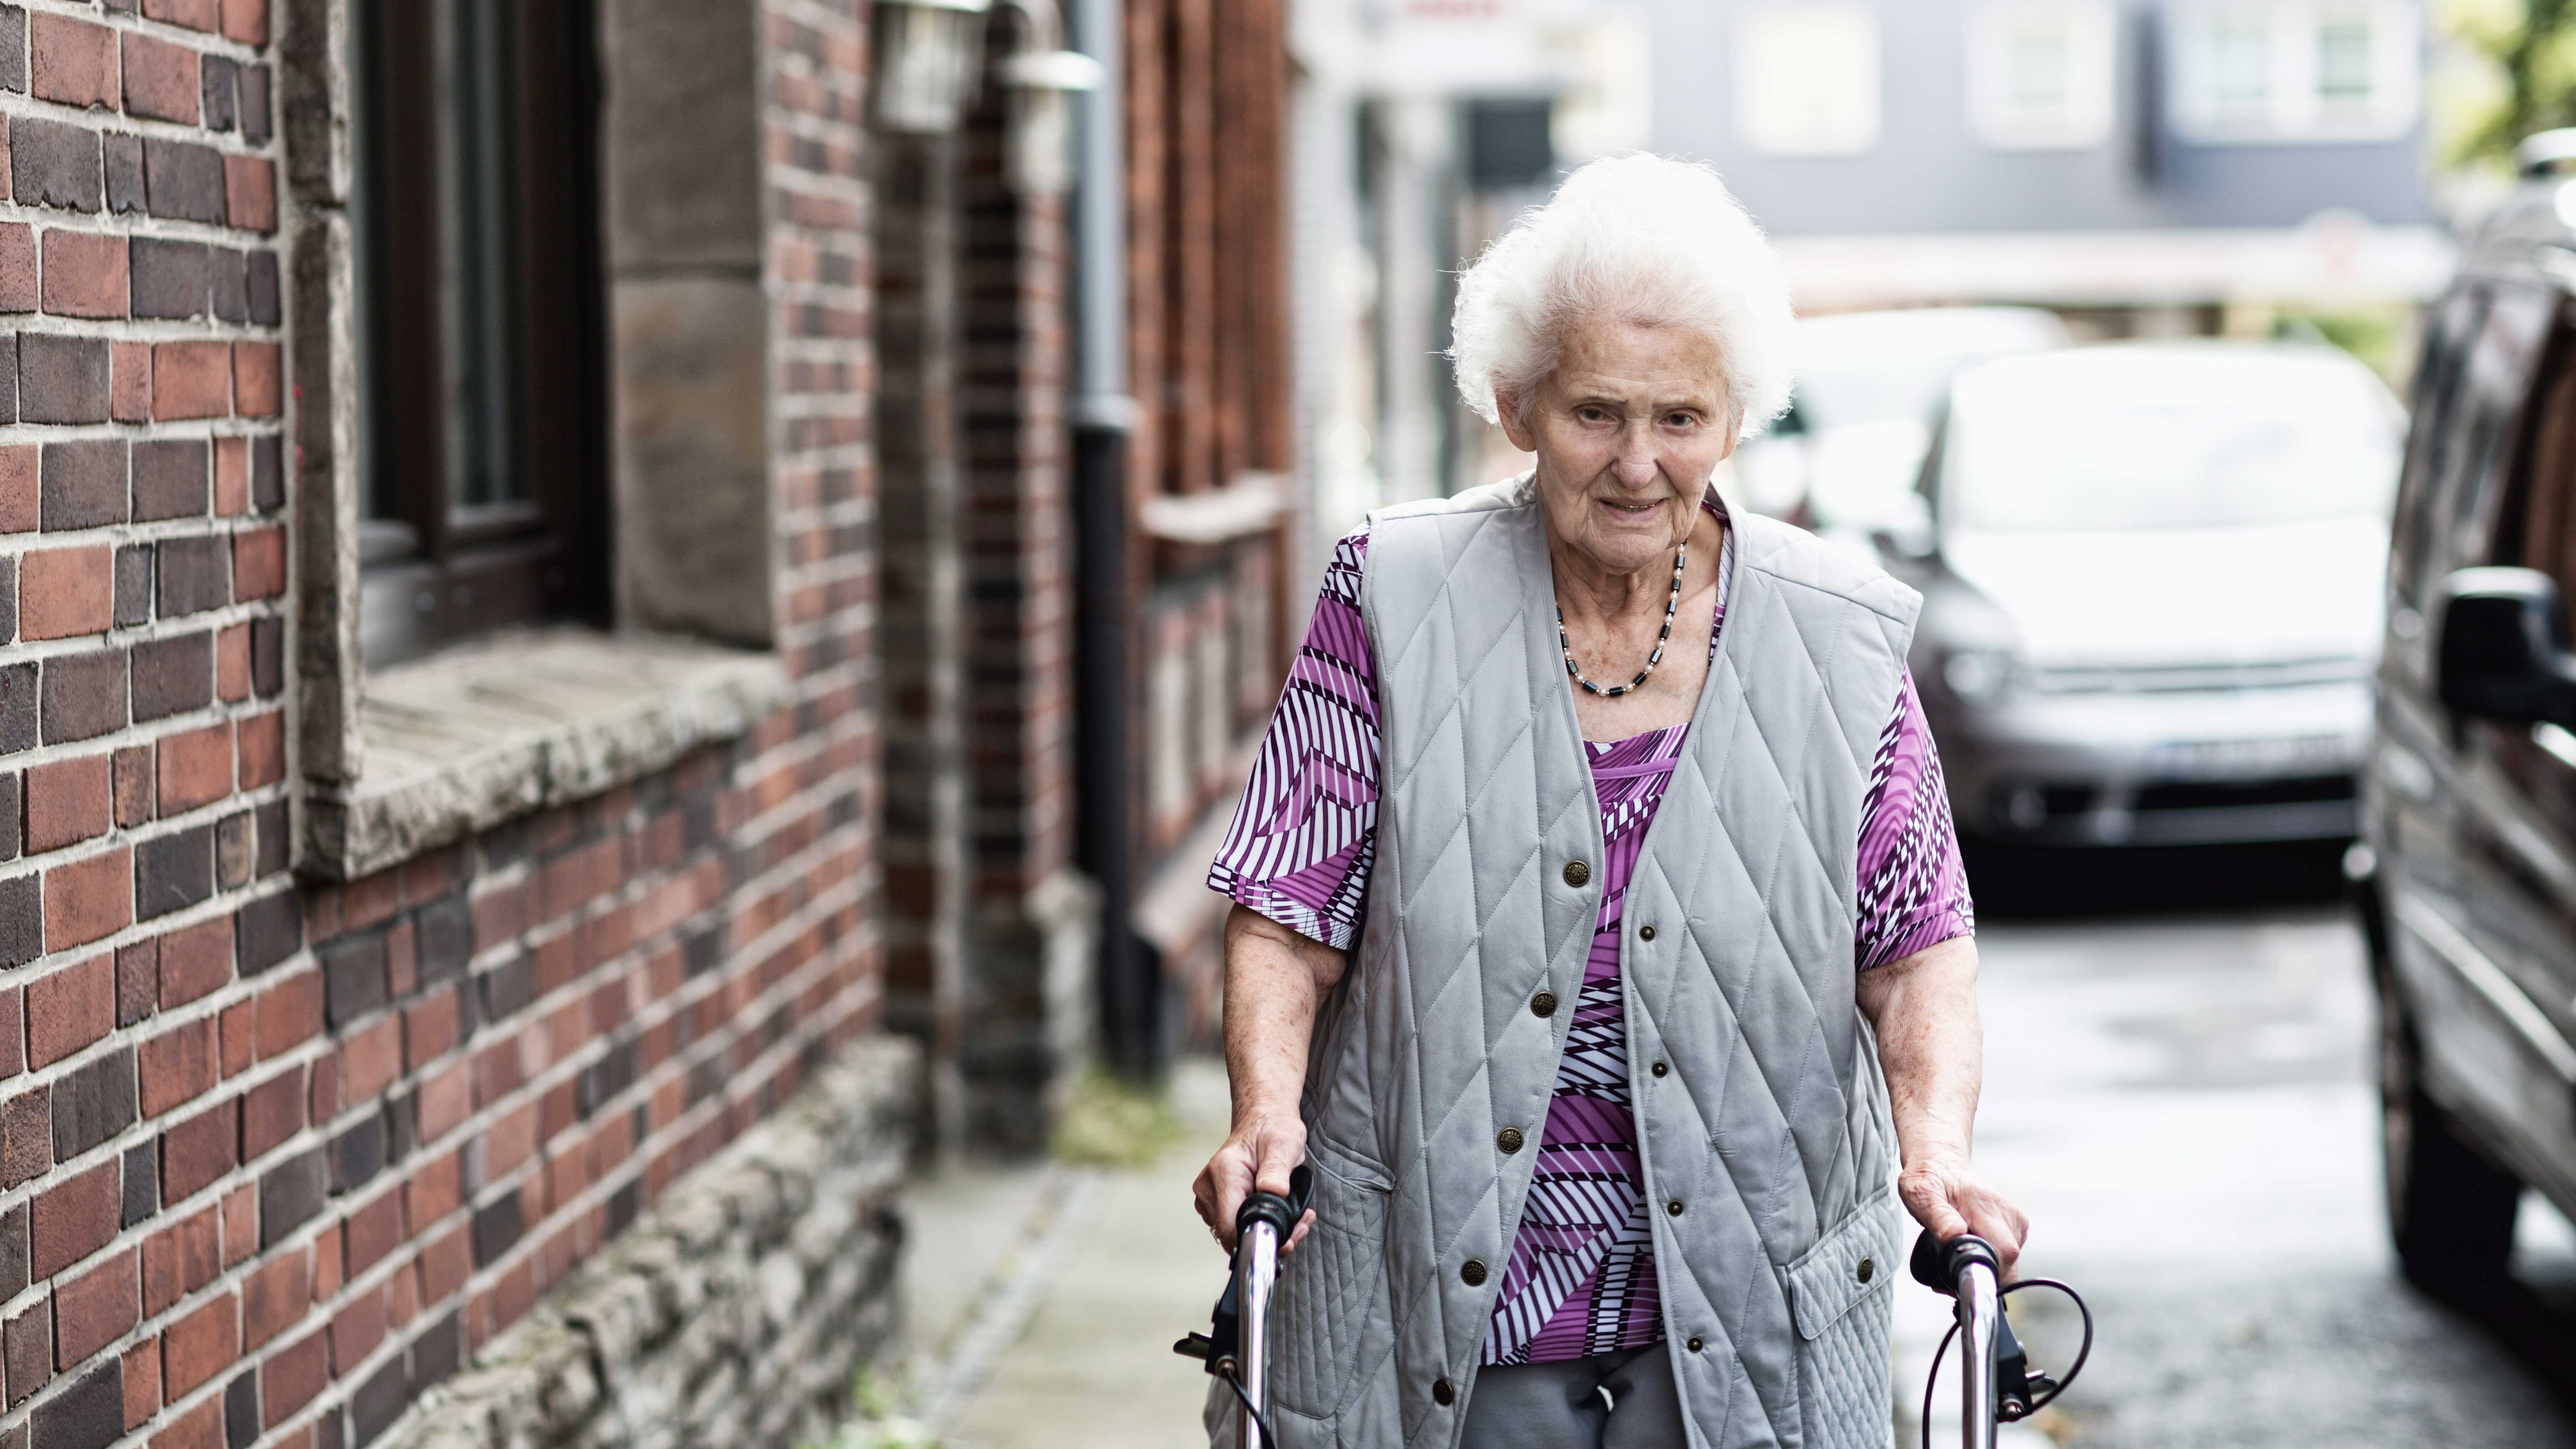 34+ Bilder von alten nackten frauen , Alte Menschen nicht häufiger von Armut bedroht als Durchschnitt